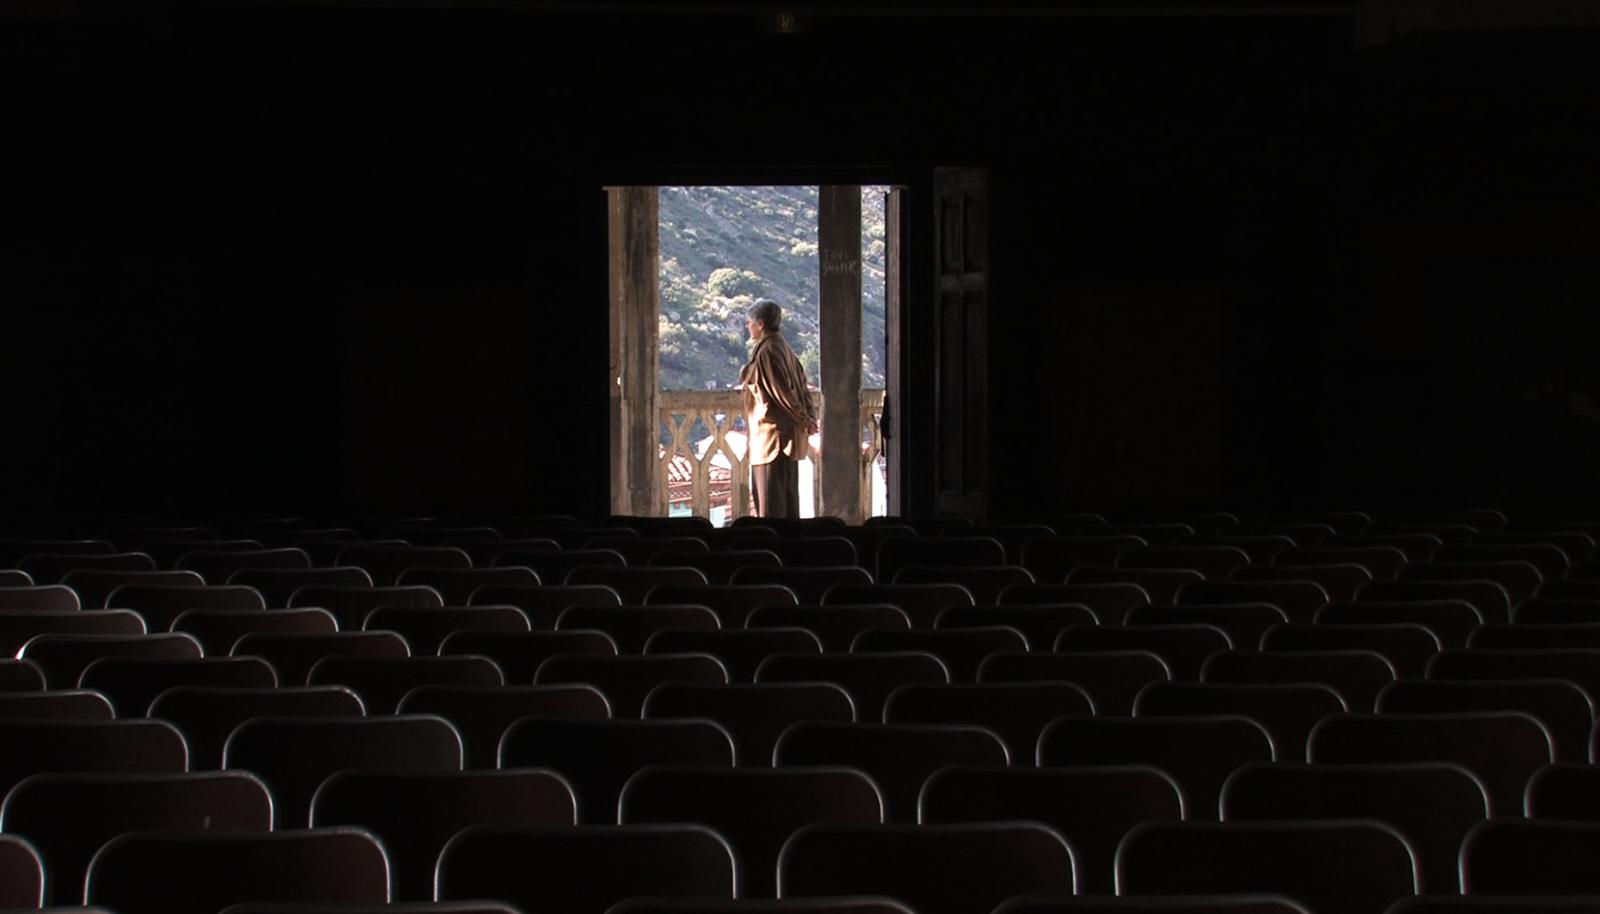 //www.occitanie-films.netAu fond d'une salle de cinéma plongée dans l'obscurité, une fenêtre est ouverte, dans son entrebâillement, une personne, debout, fait face aux montagnes